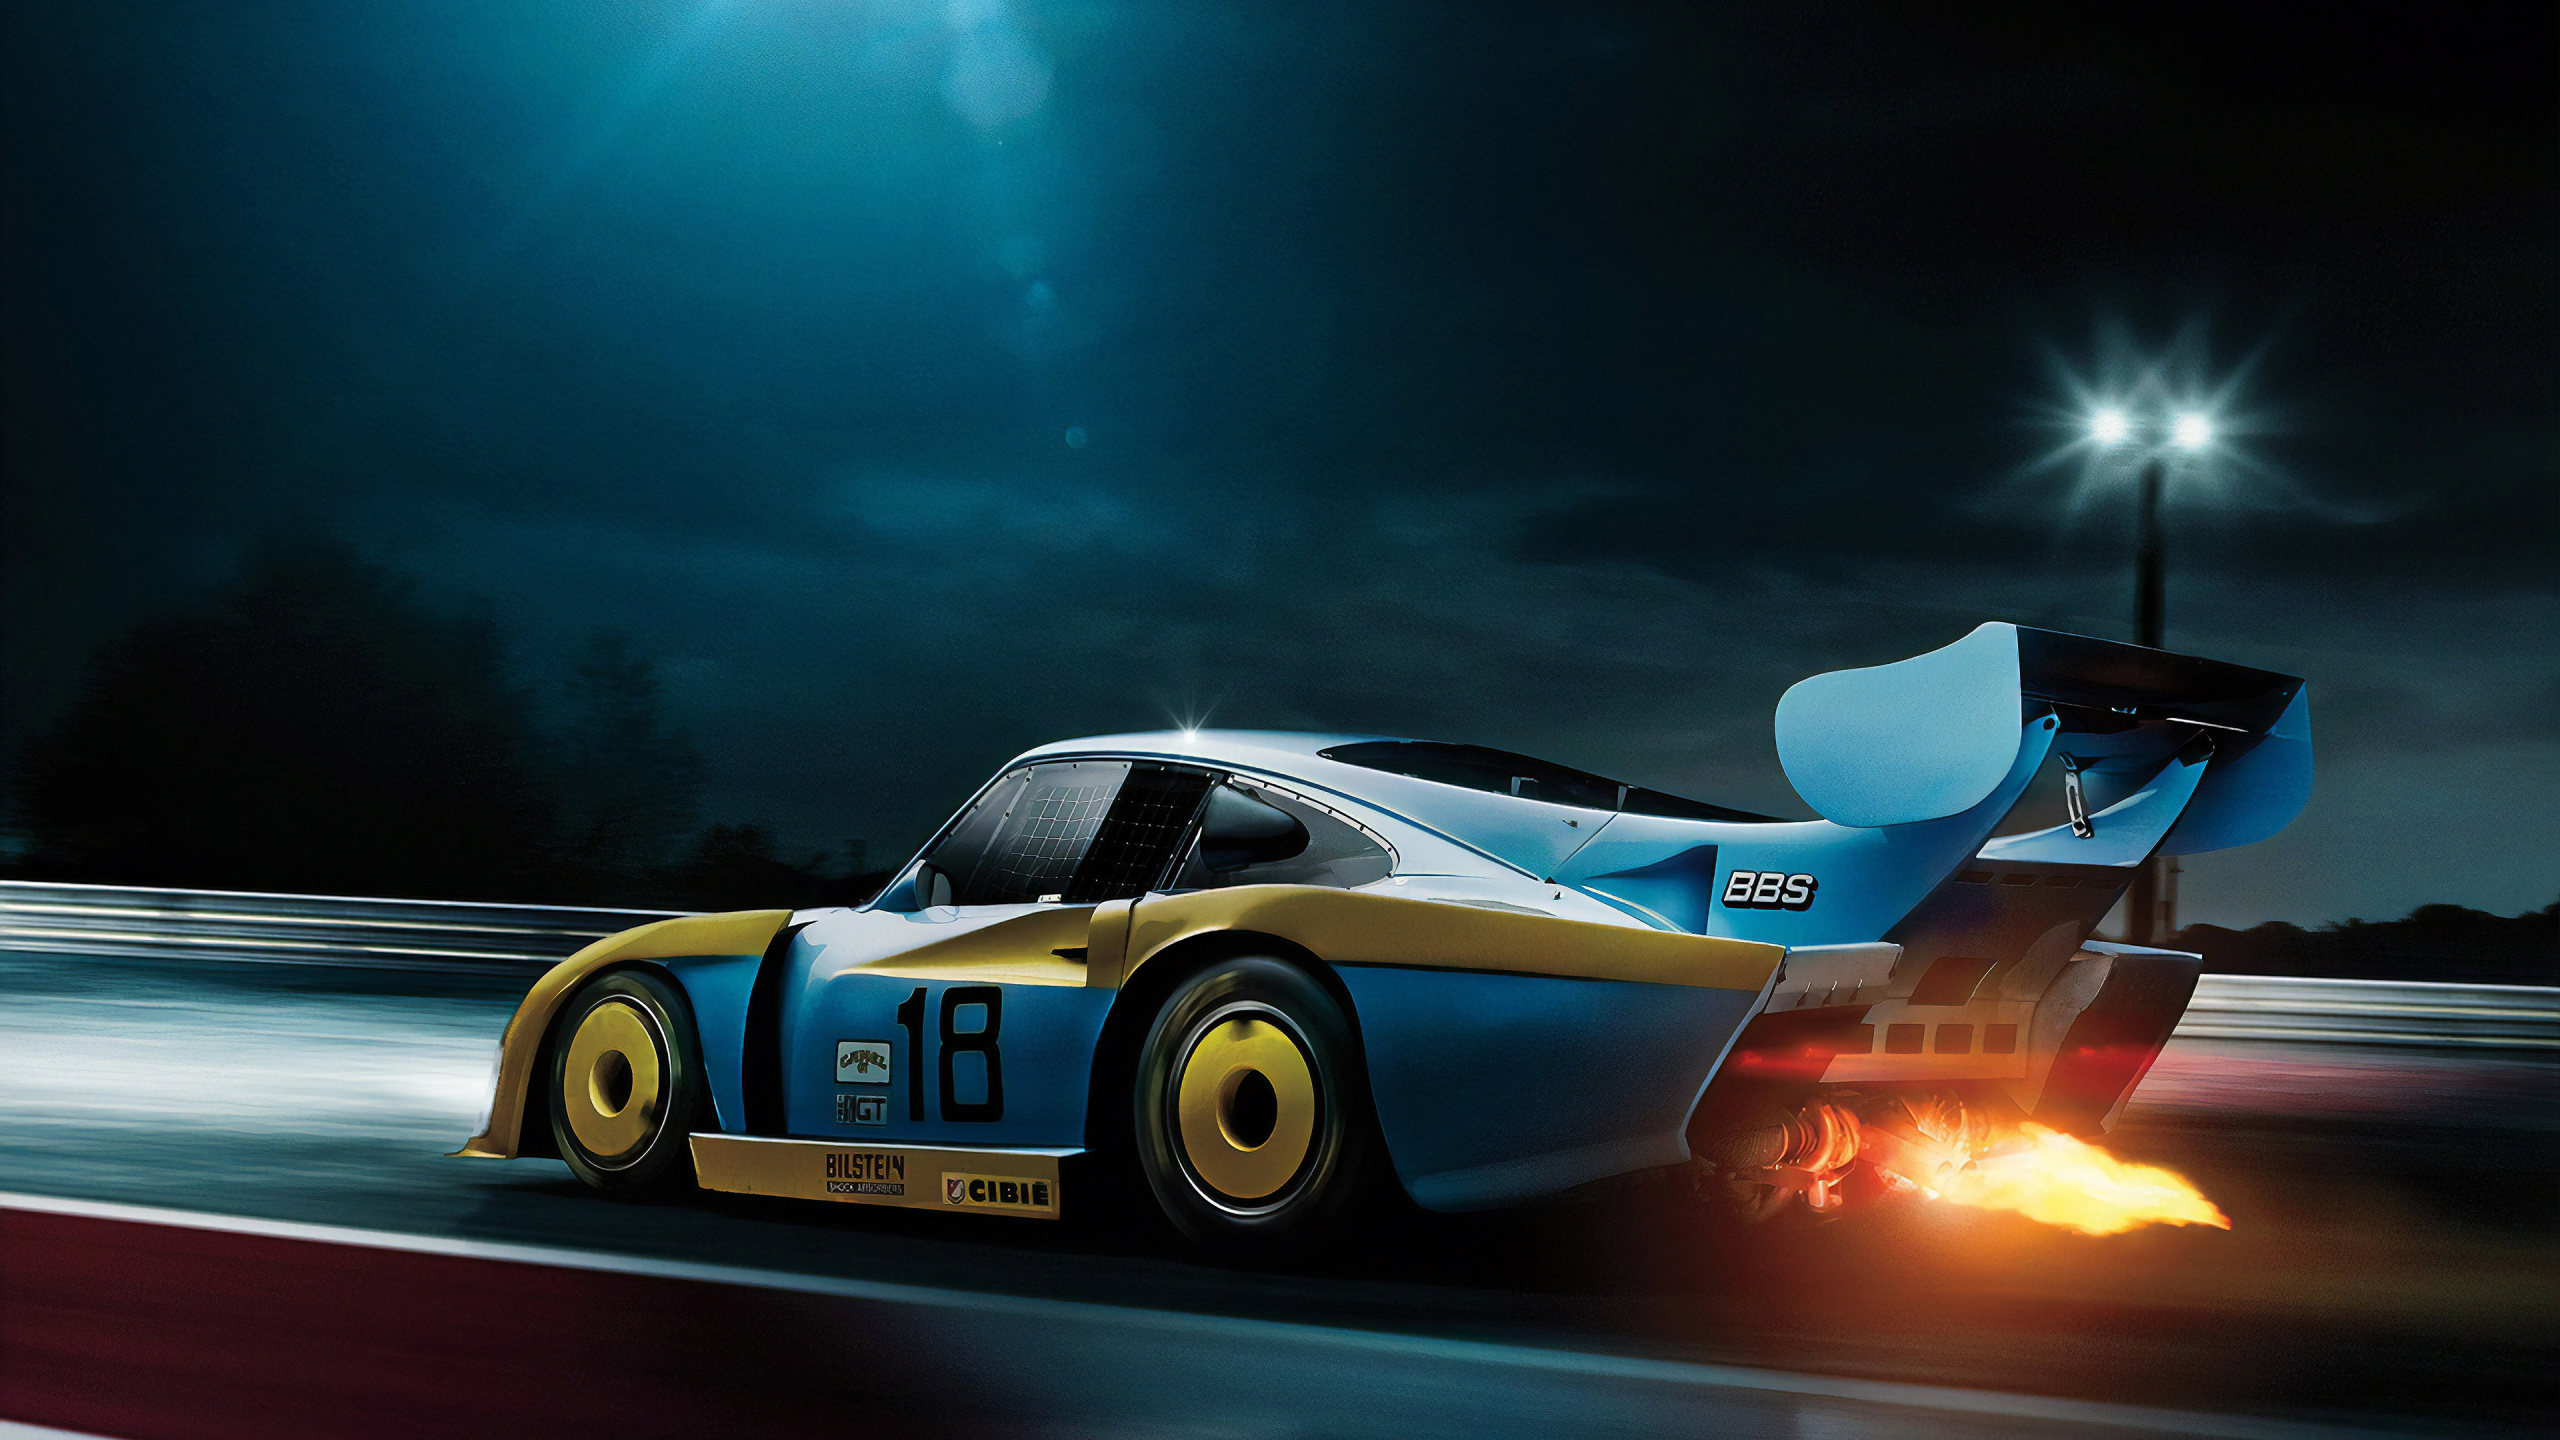 Porsche 911 Blanche et Bleue Sur Route la Nuit. Wallpaper in 2560x1440 Resolution